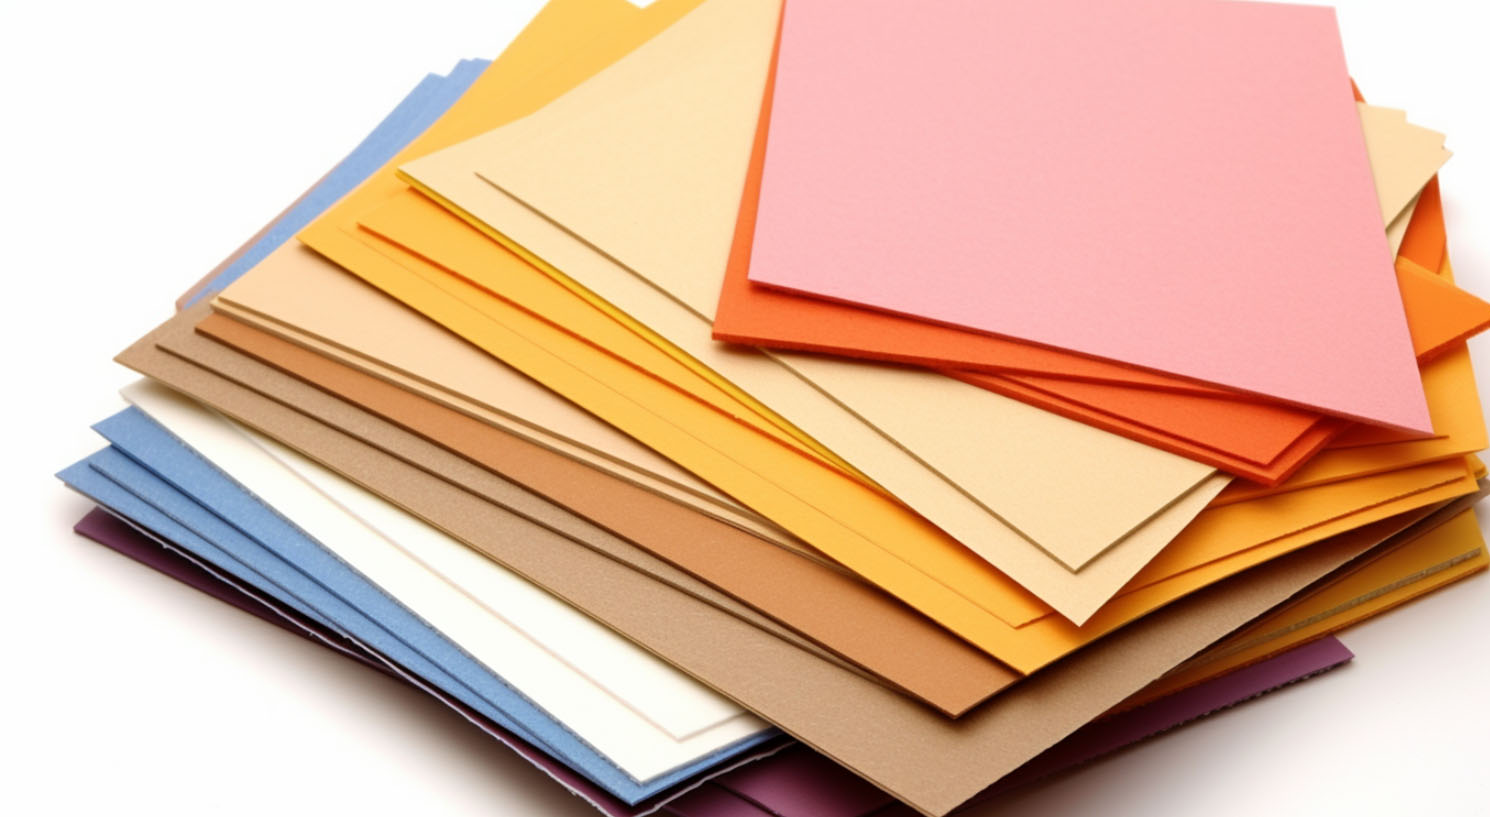 Tonpapier in verschiedenen Farben und Größen